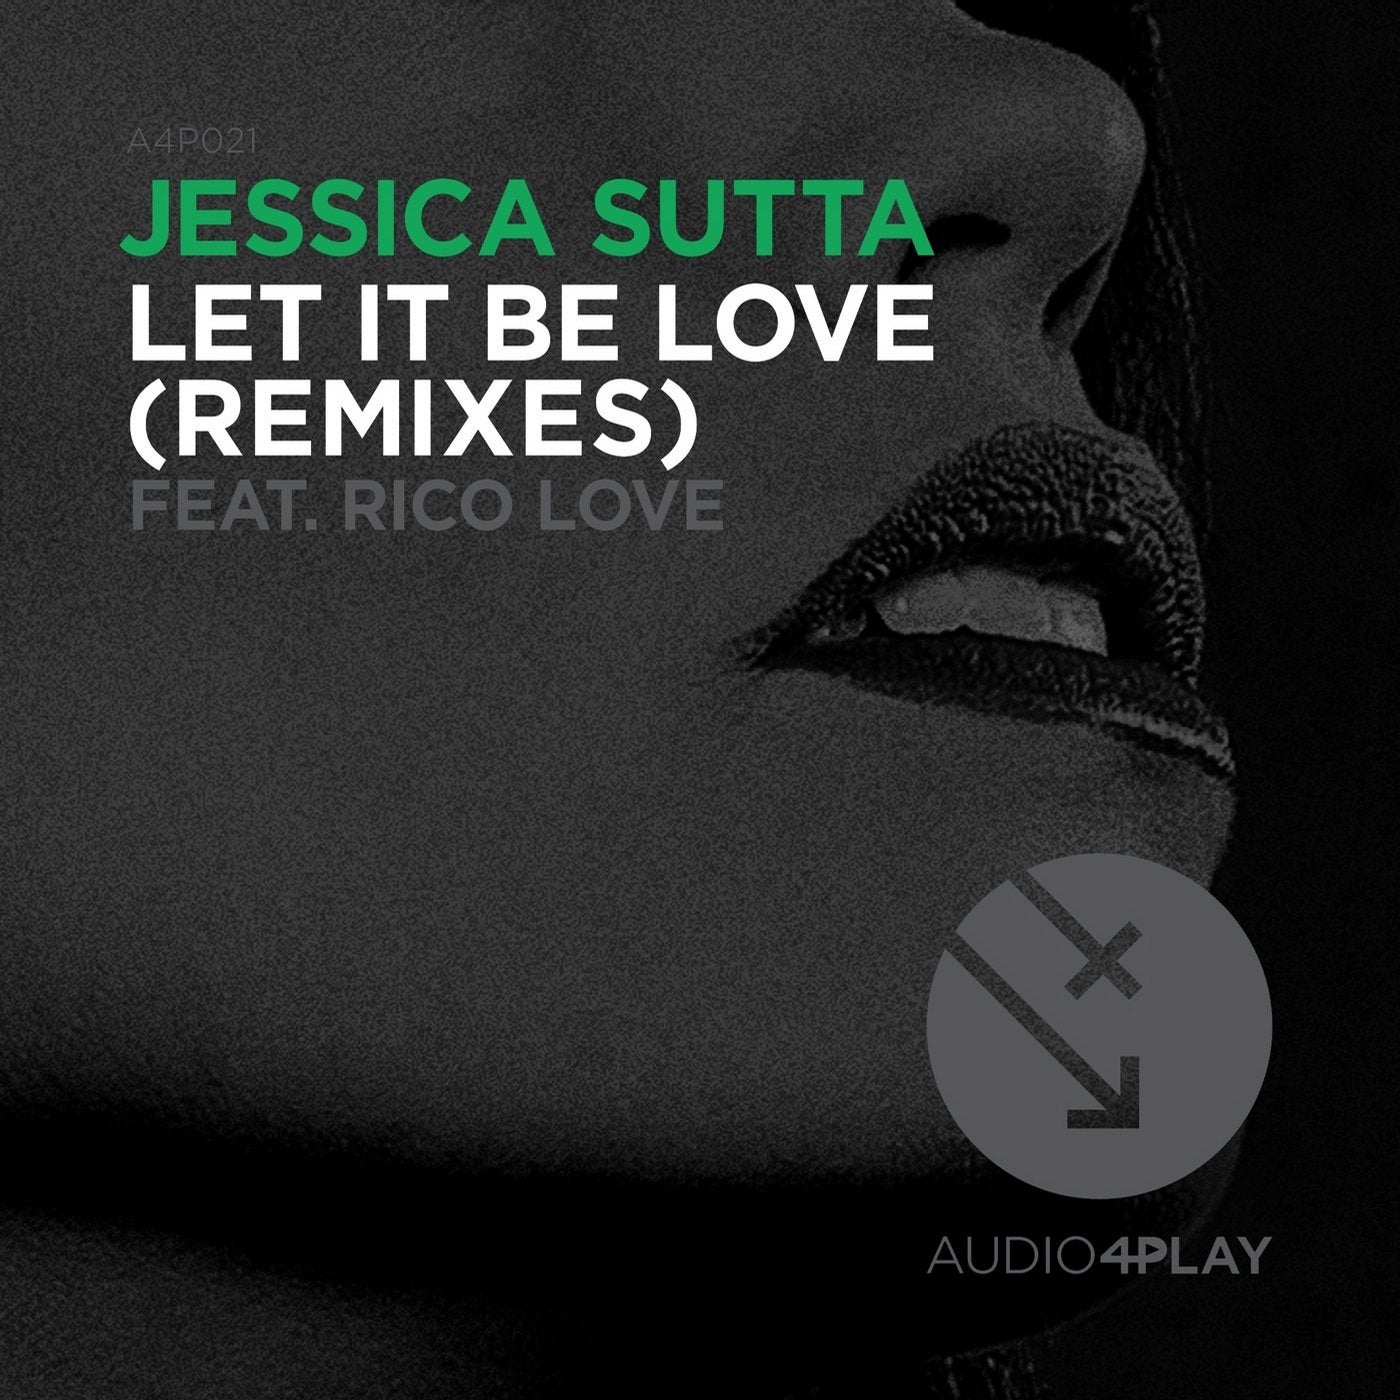 Lets love remix